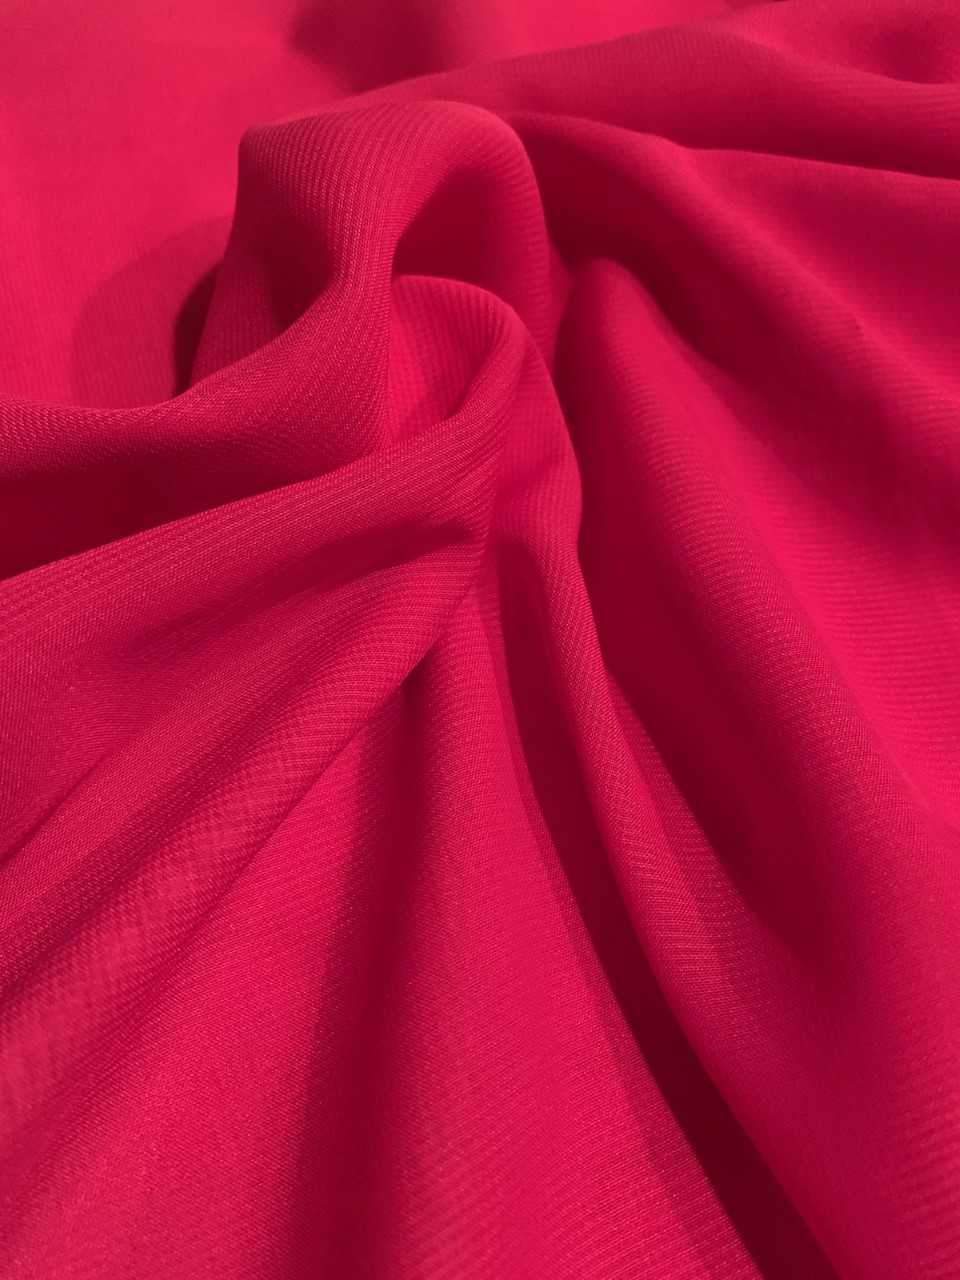 58" Fuchsia Chiffon Fabric By The Yard - Polyester